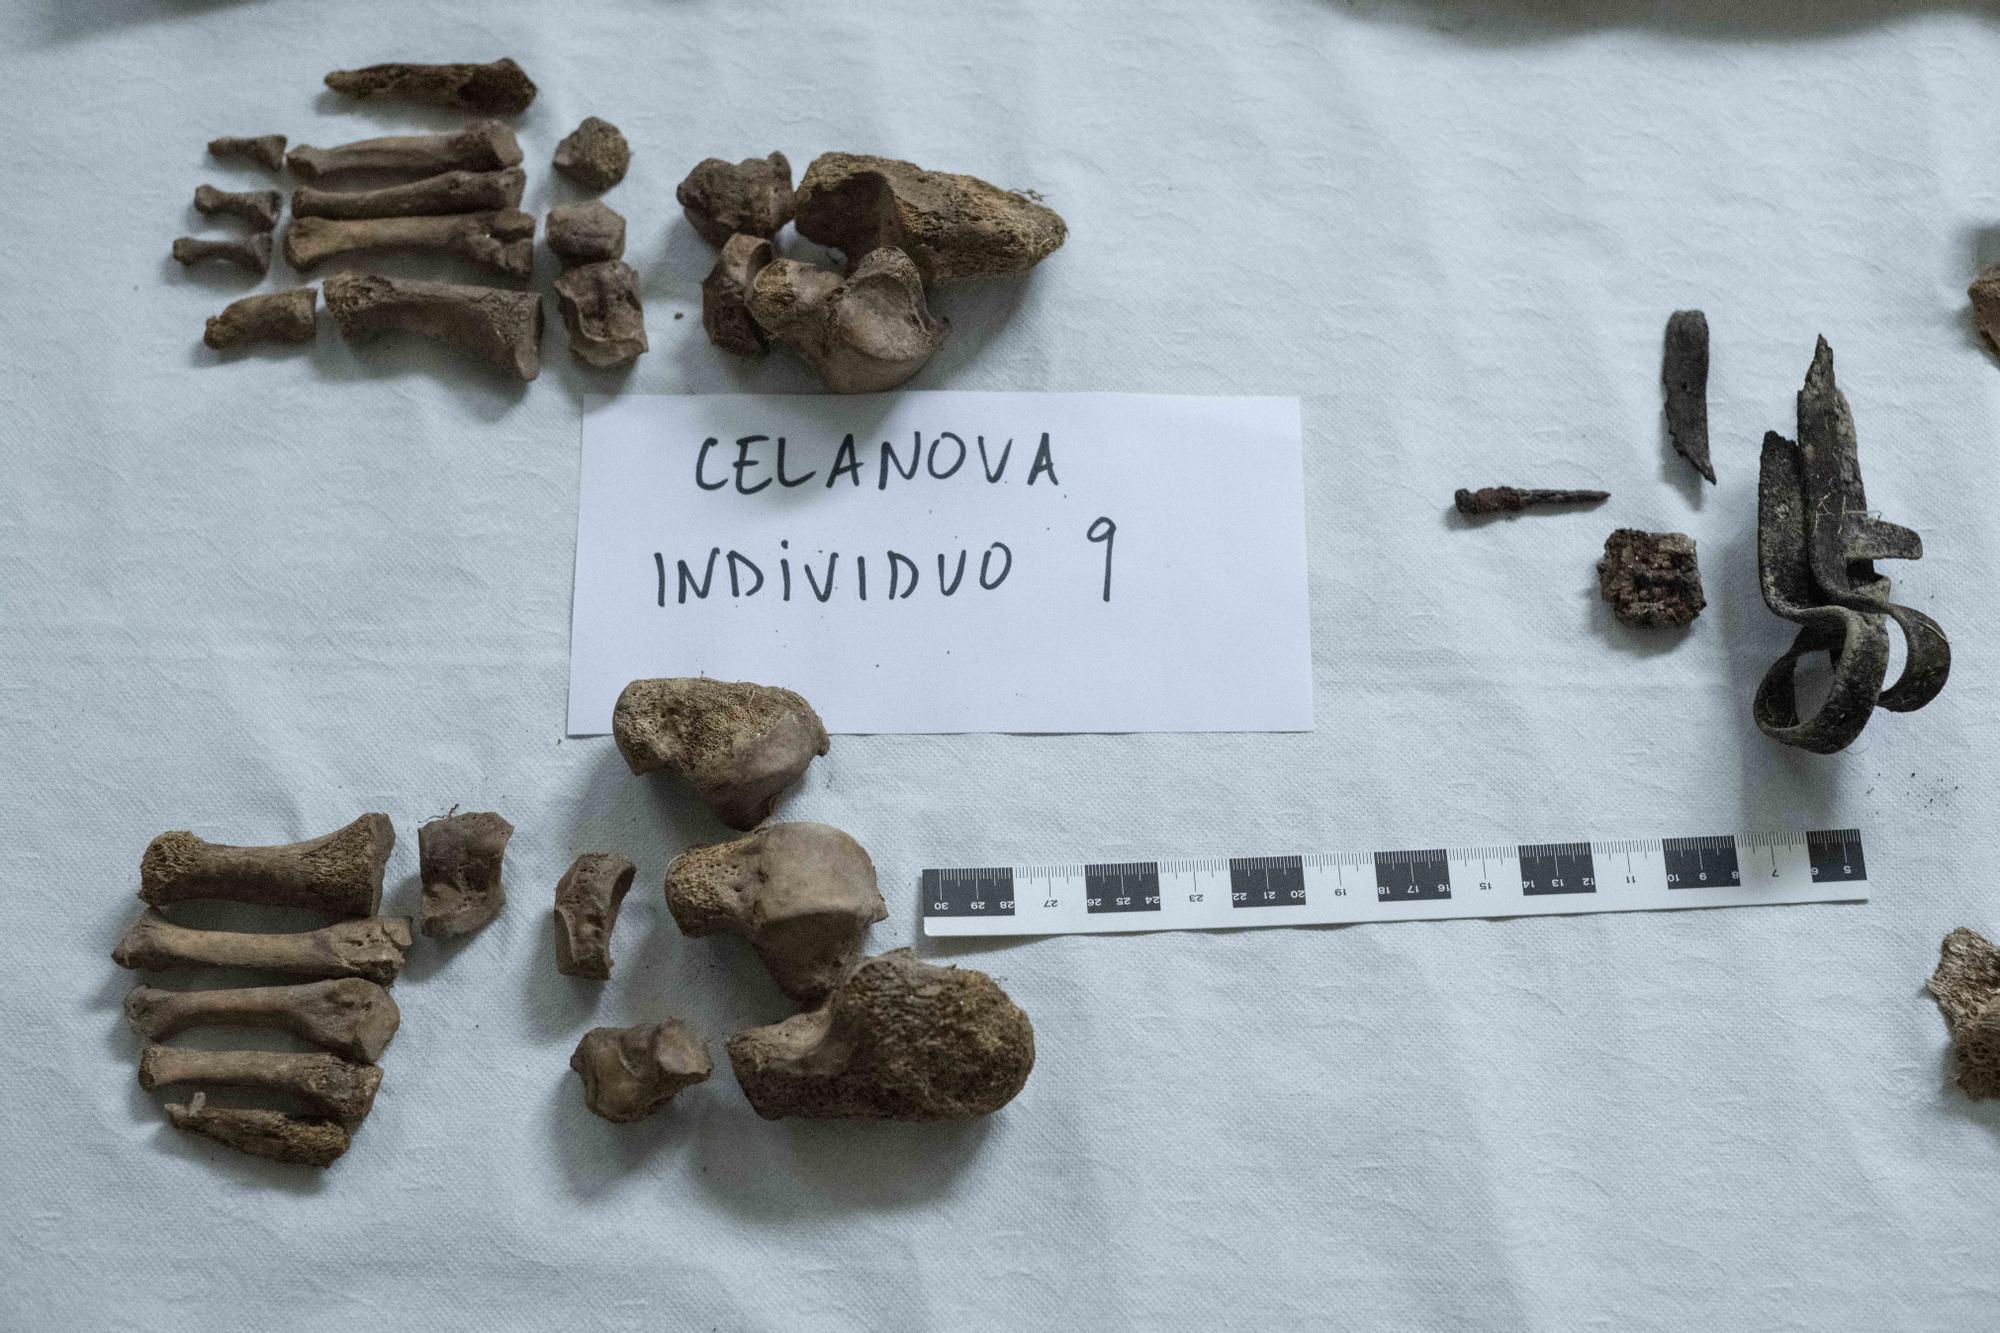 Los huesos de los pies del individuo número 9 de Celanova.